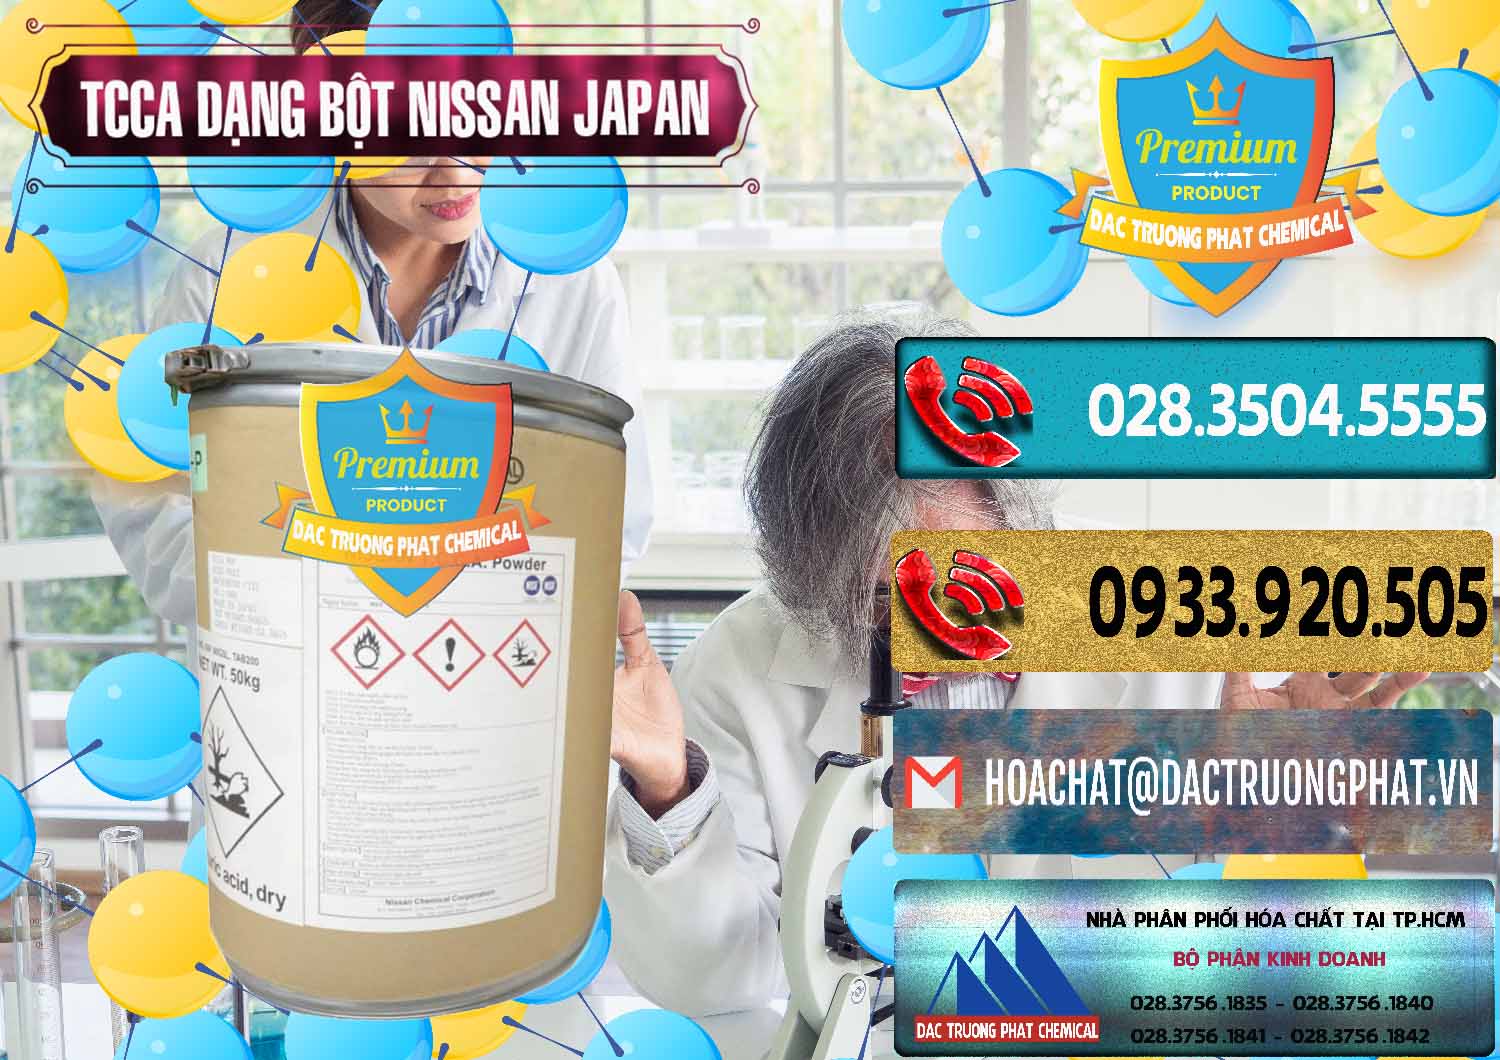 Bán TCCA - Acid Trichloroisocyanuric 90% Dạng Bột Nissan Nhật Bản Japan - 0375 - Cty chuyên phân phối _ kinh doanh hóa chất tại TP.HCM - hoachatdetnhuom.com